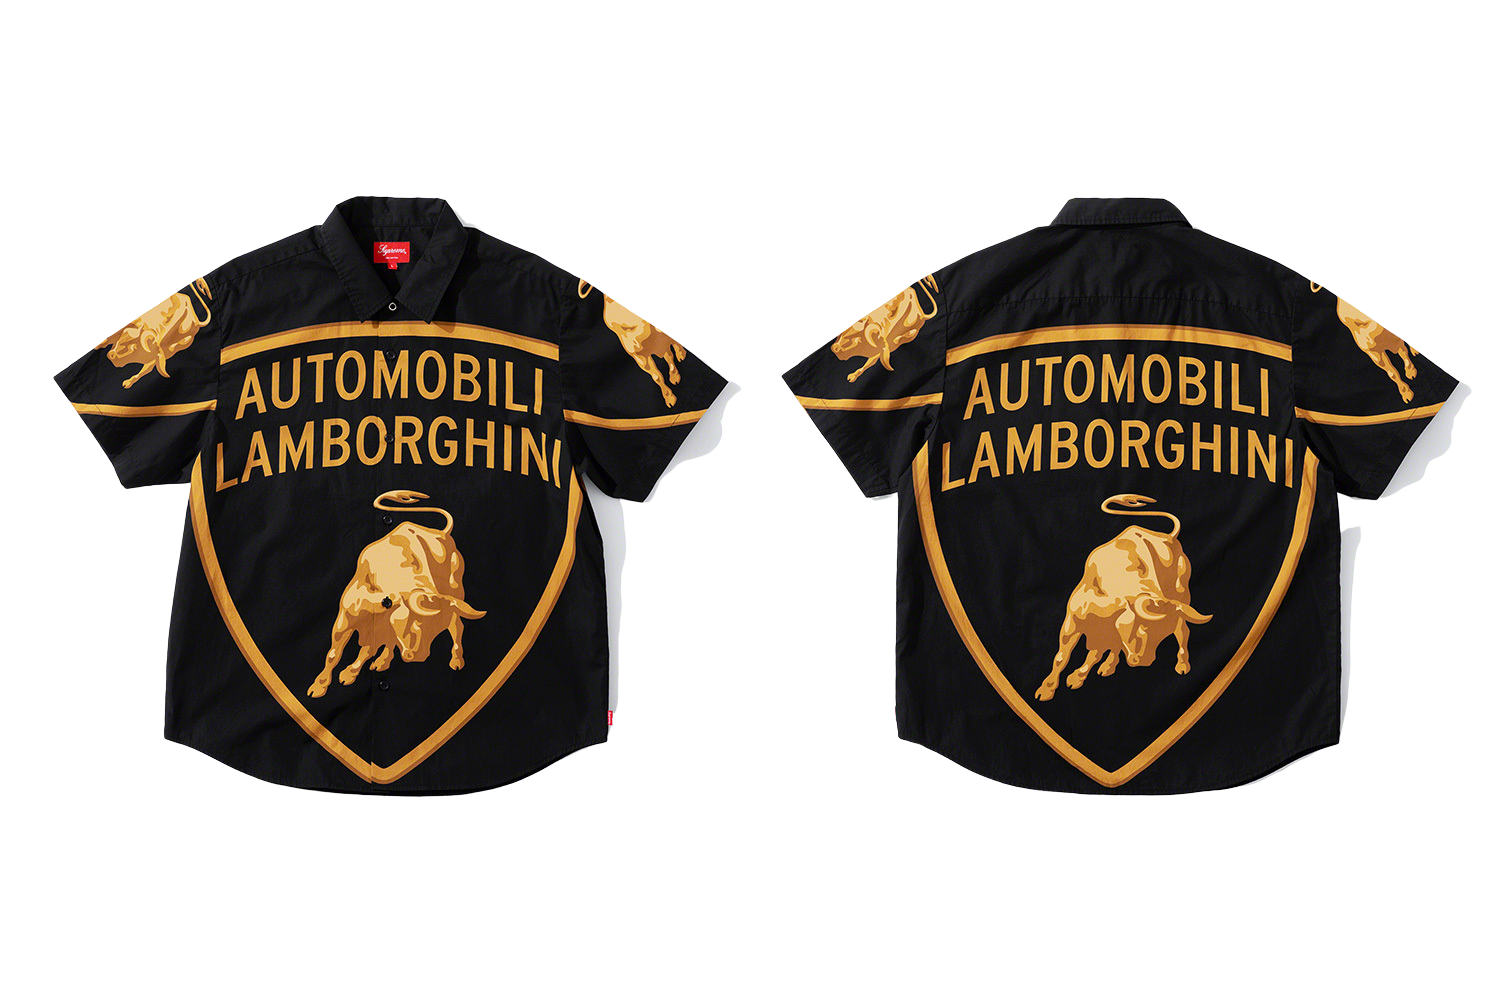 9,680円Supreme/Automobili Lamborghini S/S Shirt